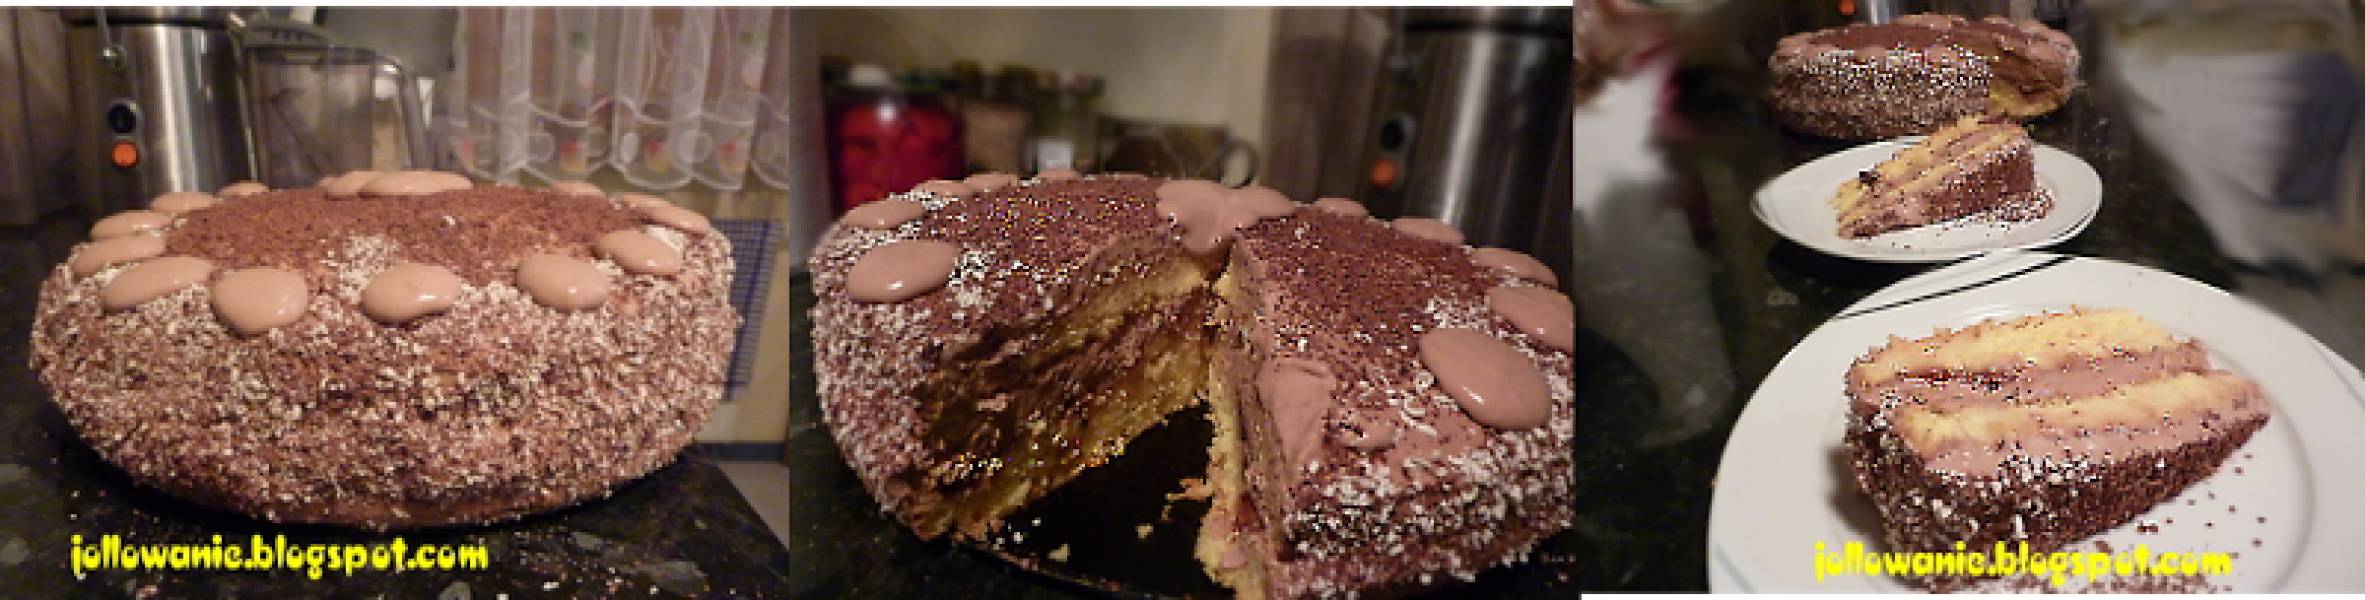 Ciasto czekoladowe / Chocolade cake